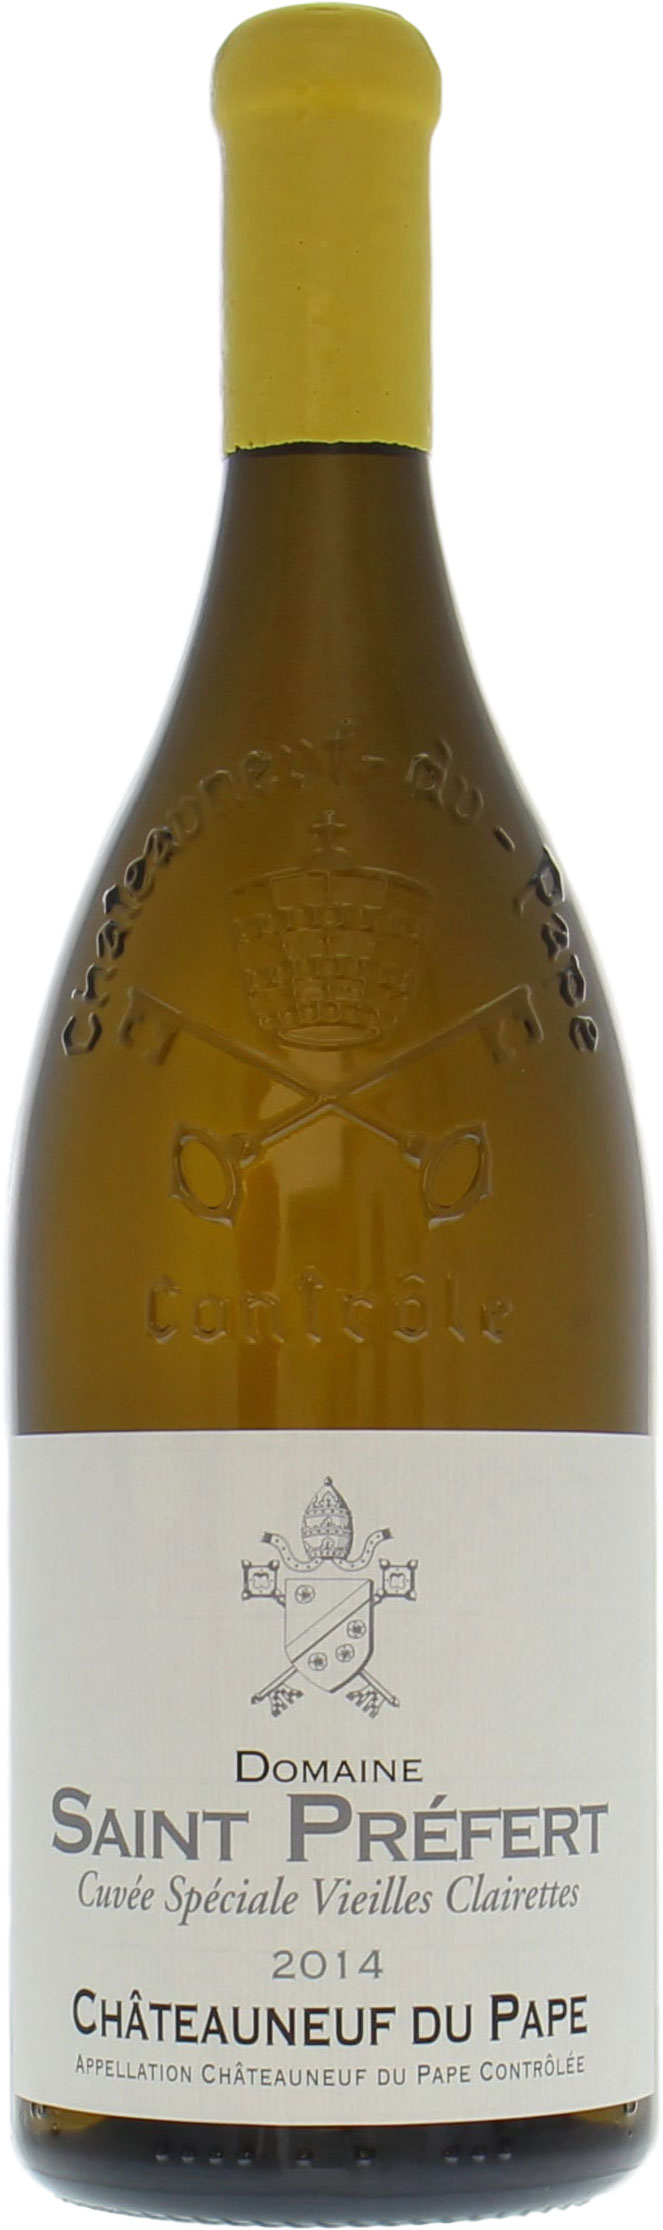 Domaine de Saint-Prefert - Chateauneuf du Pape Chateauneuf du Pape Vieilles Vignes de Clairette Blanc 2014 Perfect